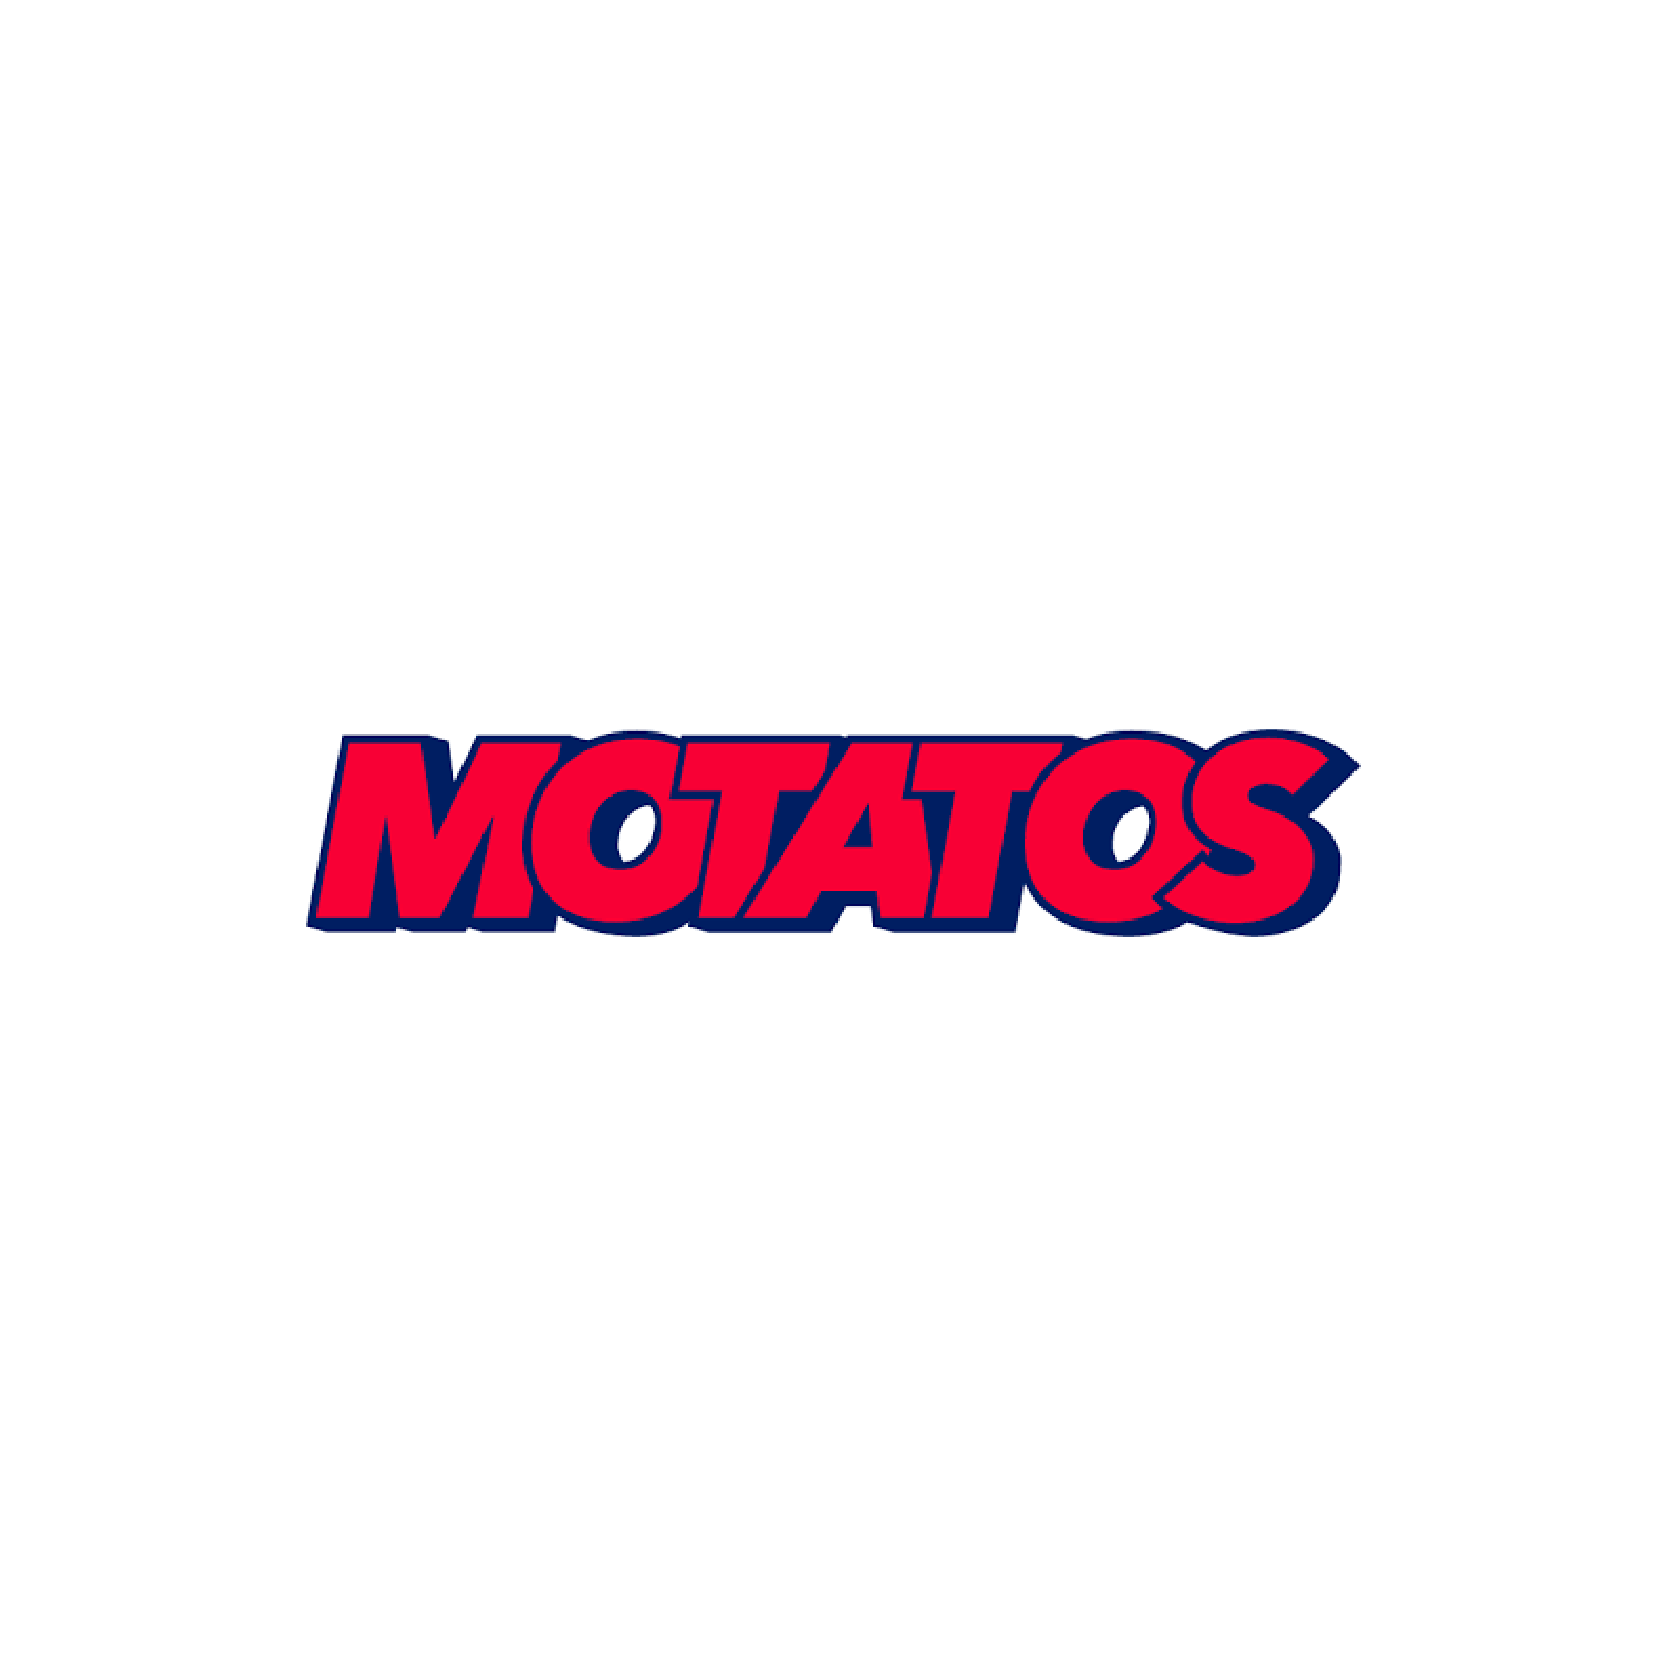 Motatos logo